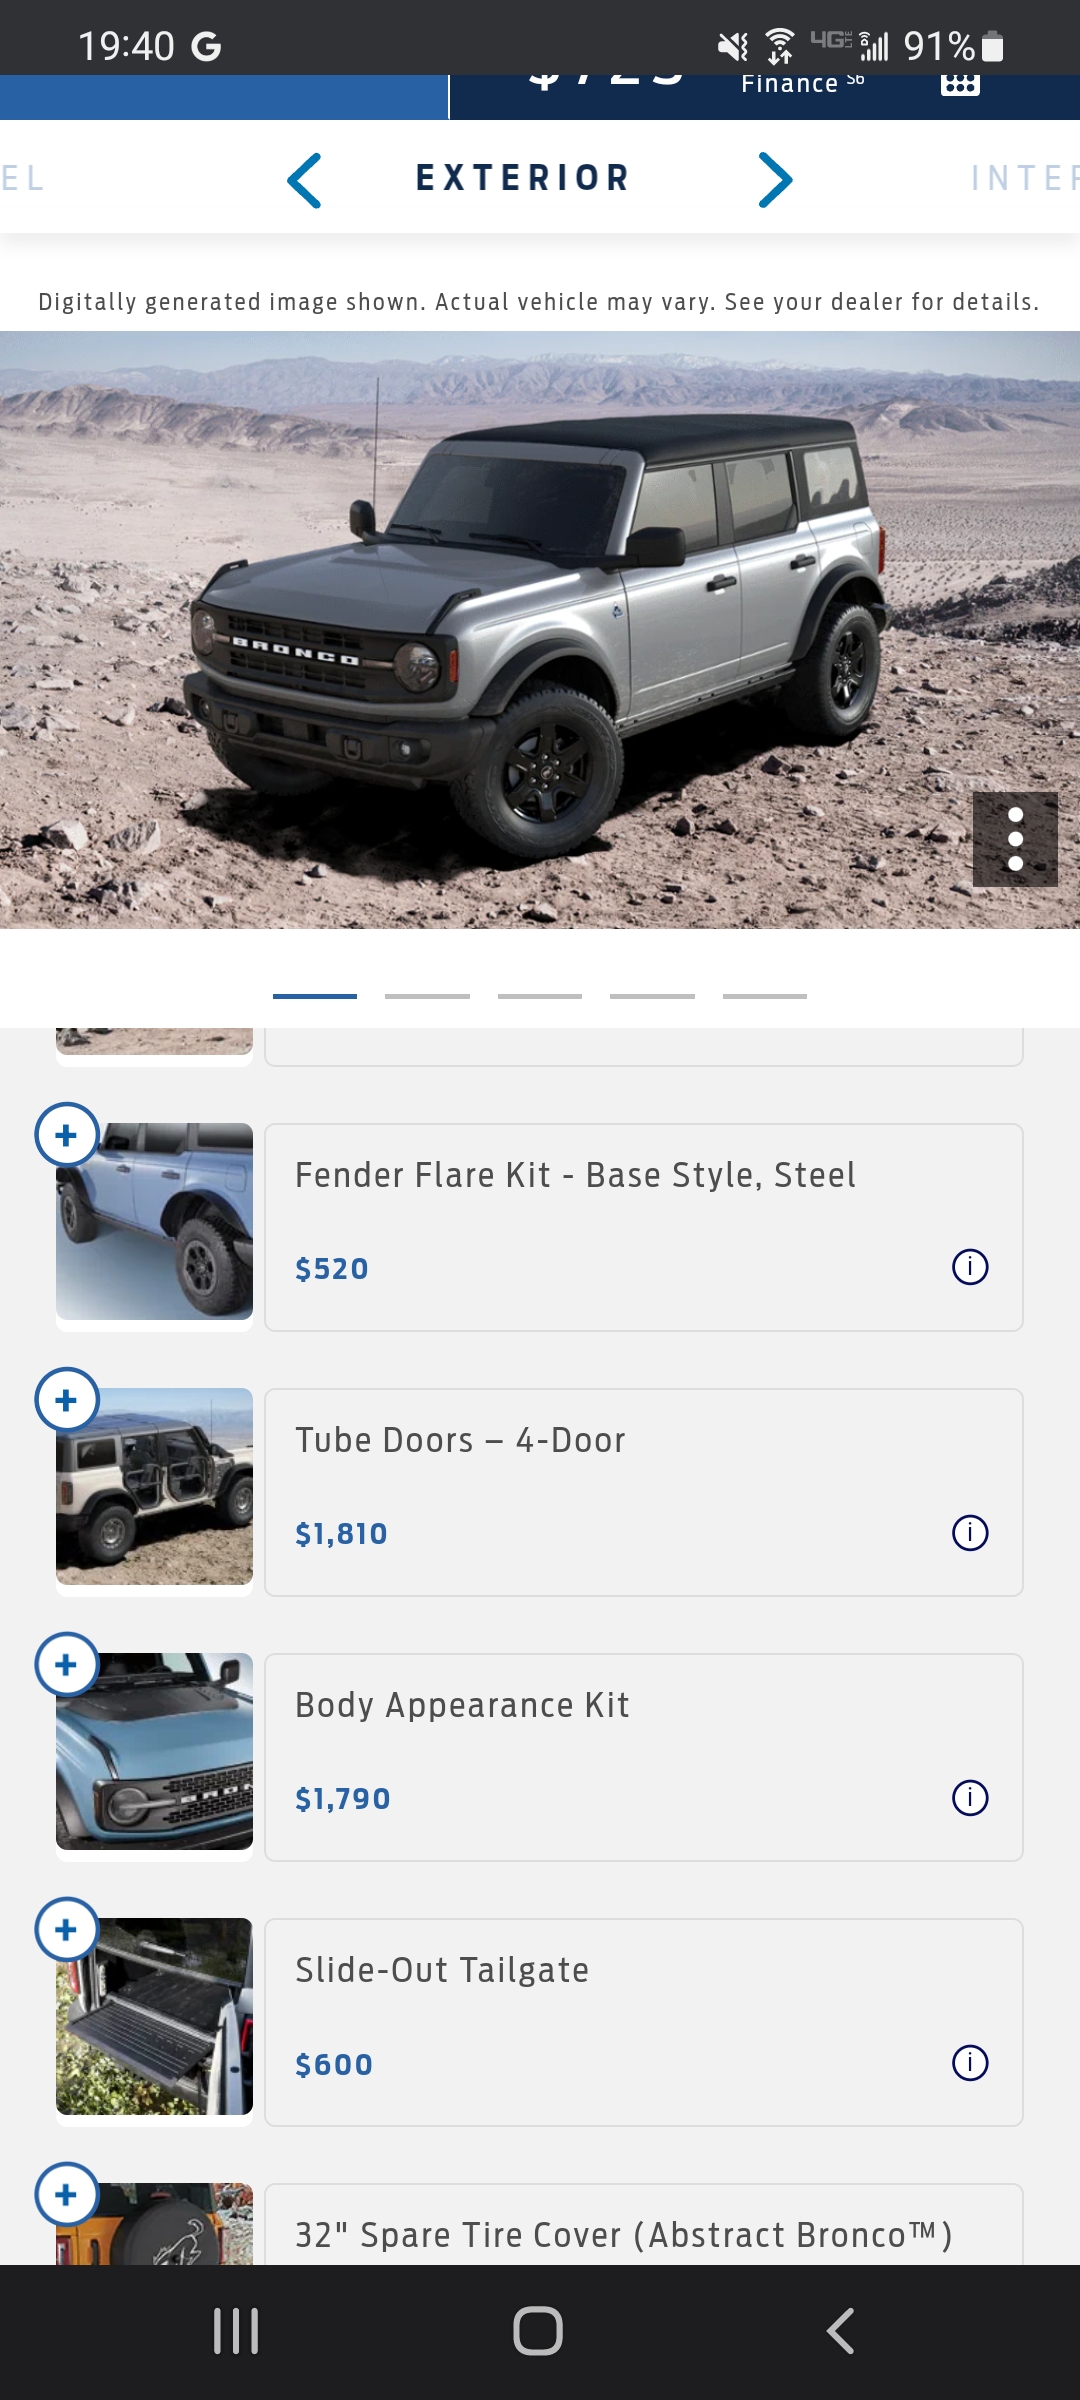 Ford Bronco Tube Doors price & part numbers released: $1250 2-Door / $2250 4-Door Screenshot_20220415-194027_Google